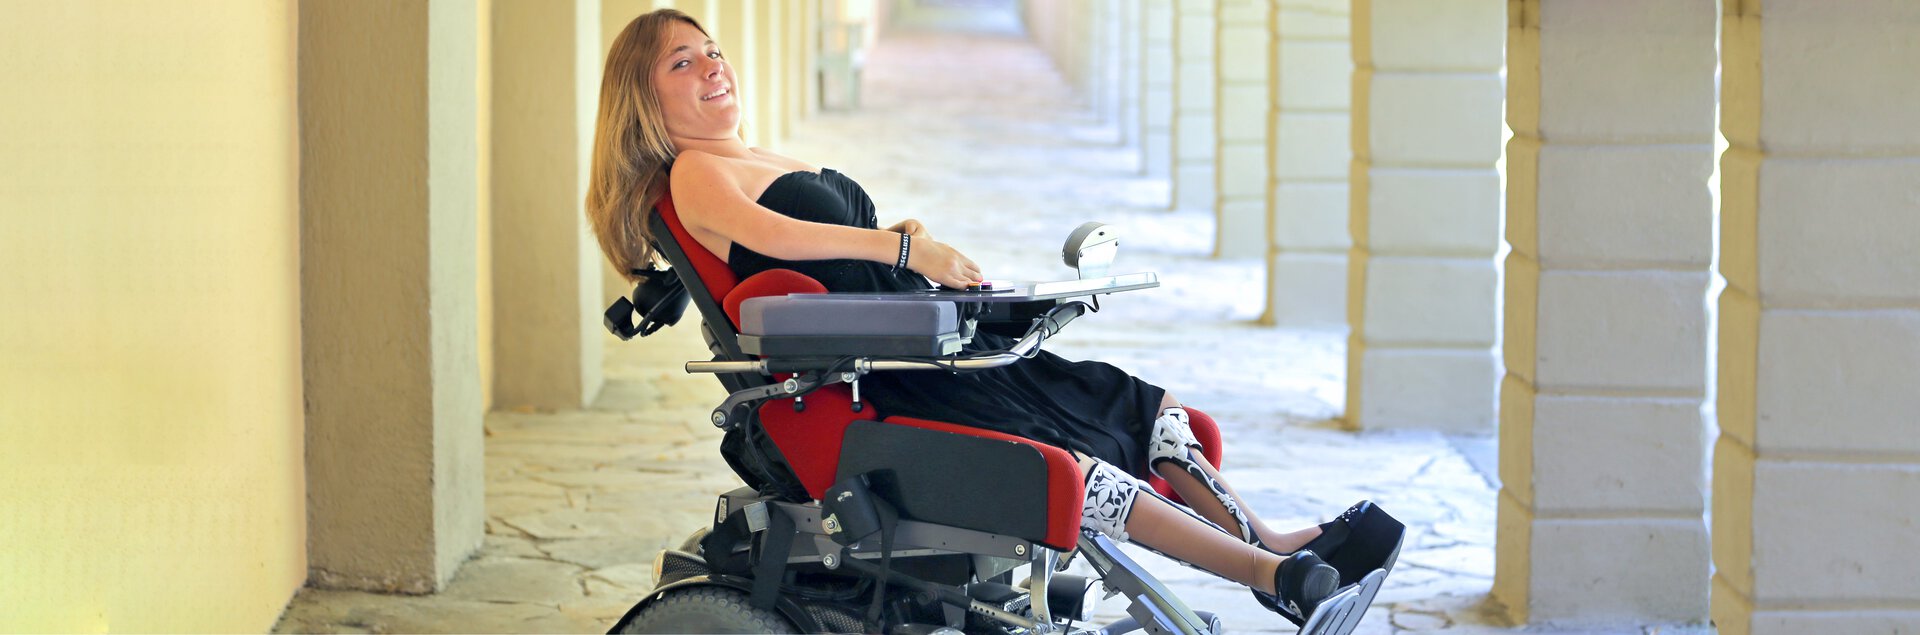 Jugendliche im Rollstuhl mit maßgefertigter Sitzschale | © Pohlig GmbH